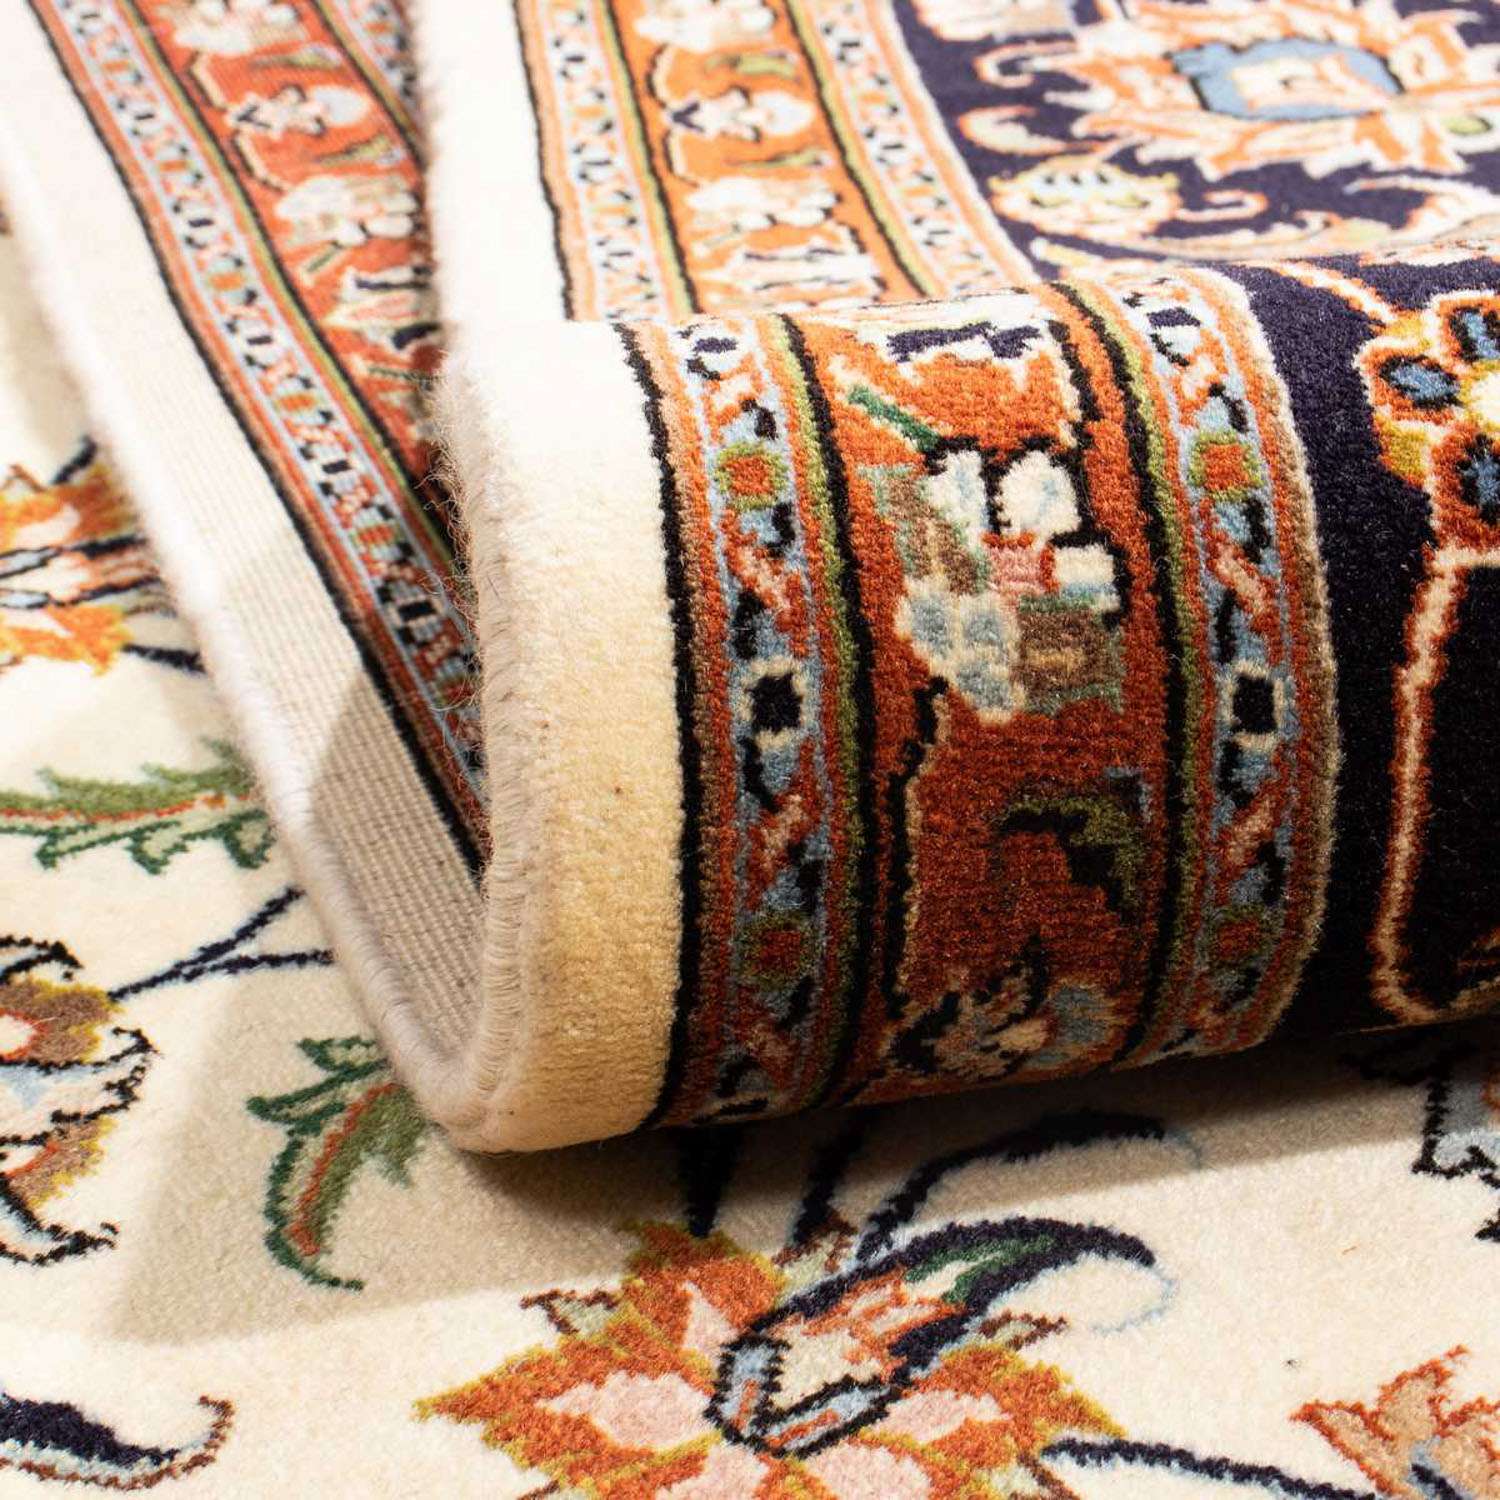 Perzisch tapijt - Klassiek - 283 x 198 cm - beige